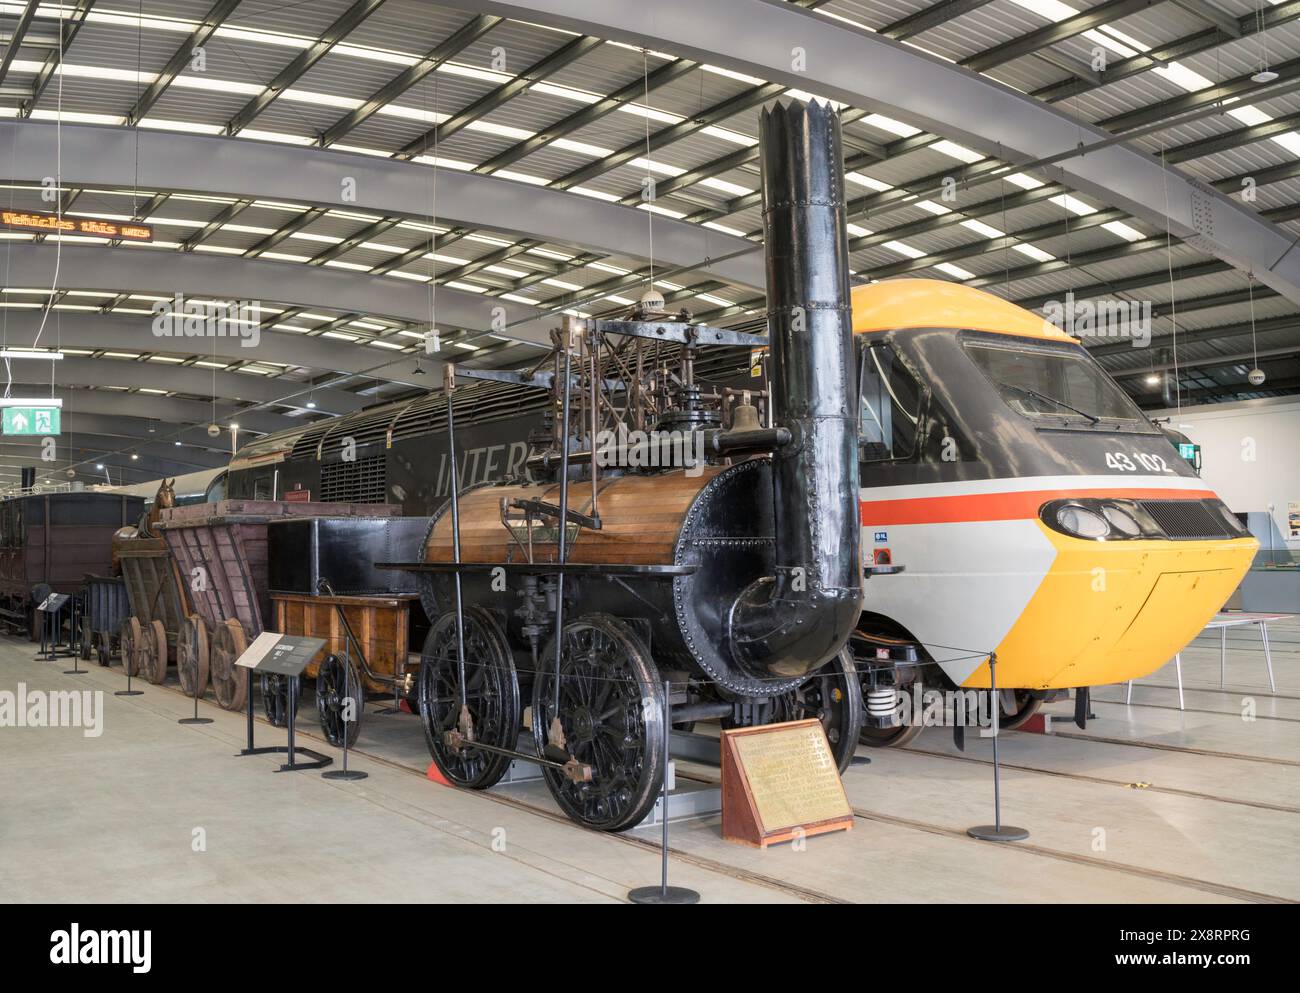 George Stephensons Dampflok Locomotion wurde 1825 für die Stockton and Darlington Railway gebaut und wurde in Locomotion, Shildon, England, Großbritannien gesehen Stockfoto